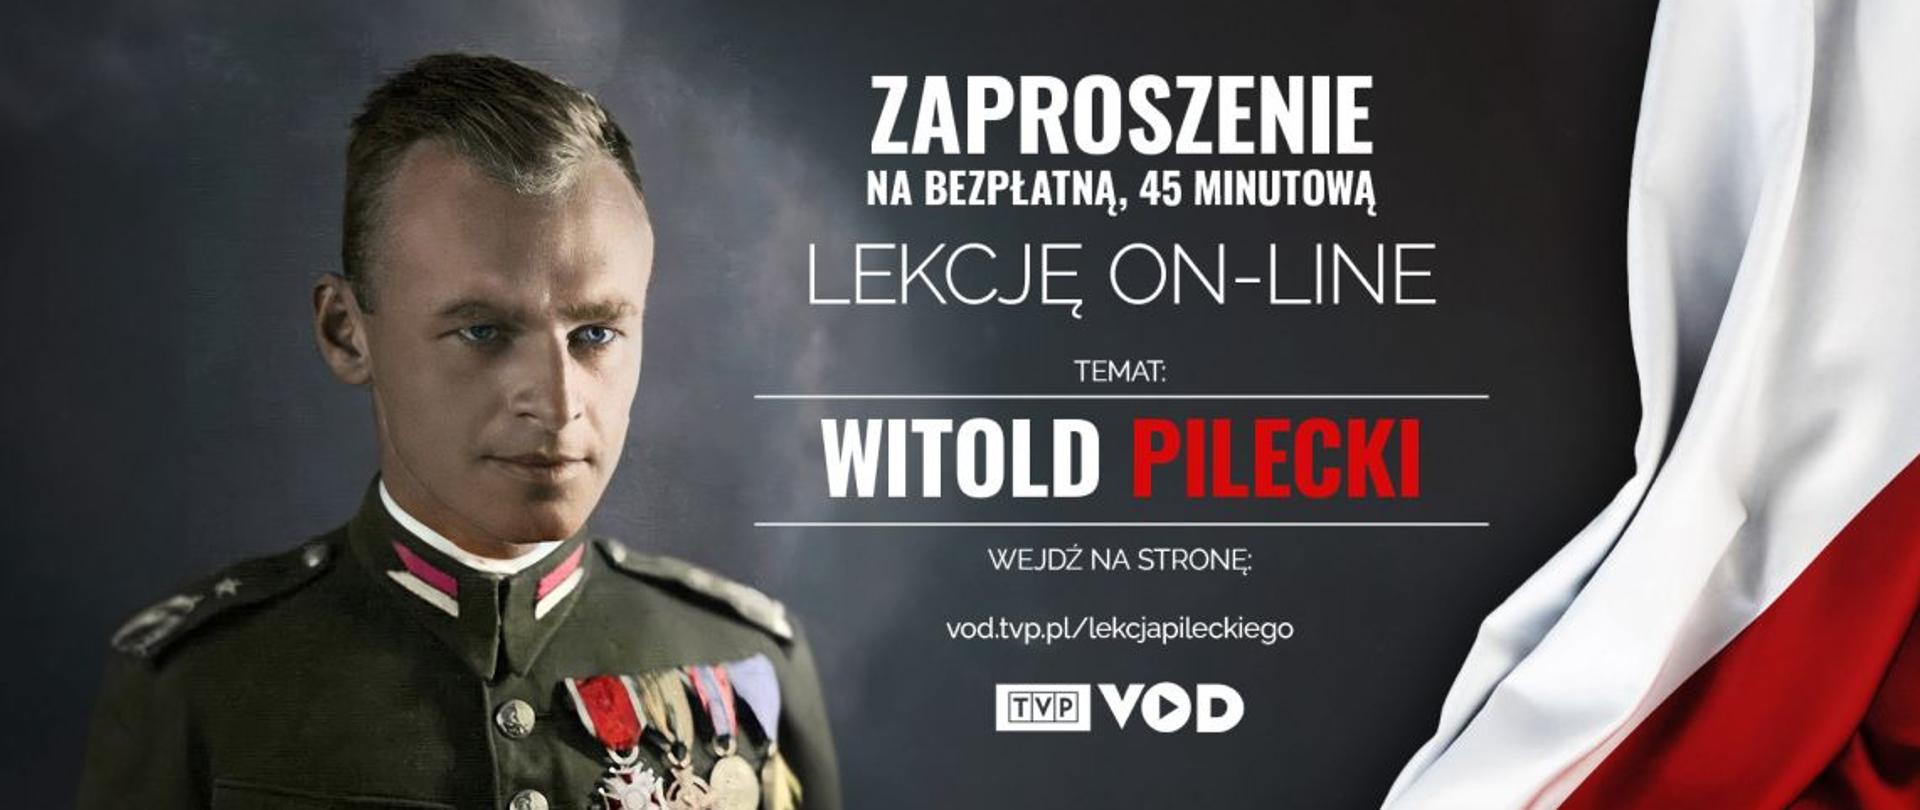 Na szarym tle zdjęcie Witolda Pileckiego w mundurze, obok polska flaga i napis Zaproszenie na bezpłatną lekcję on-line - temat: Witold Pilecki.